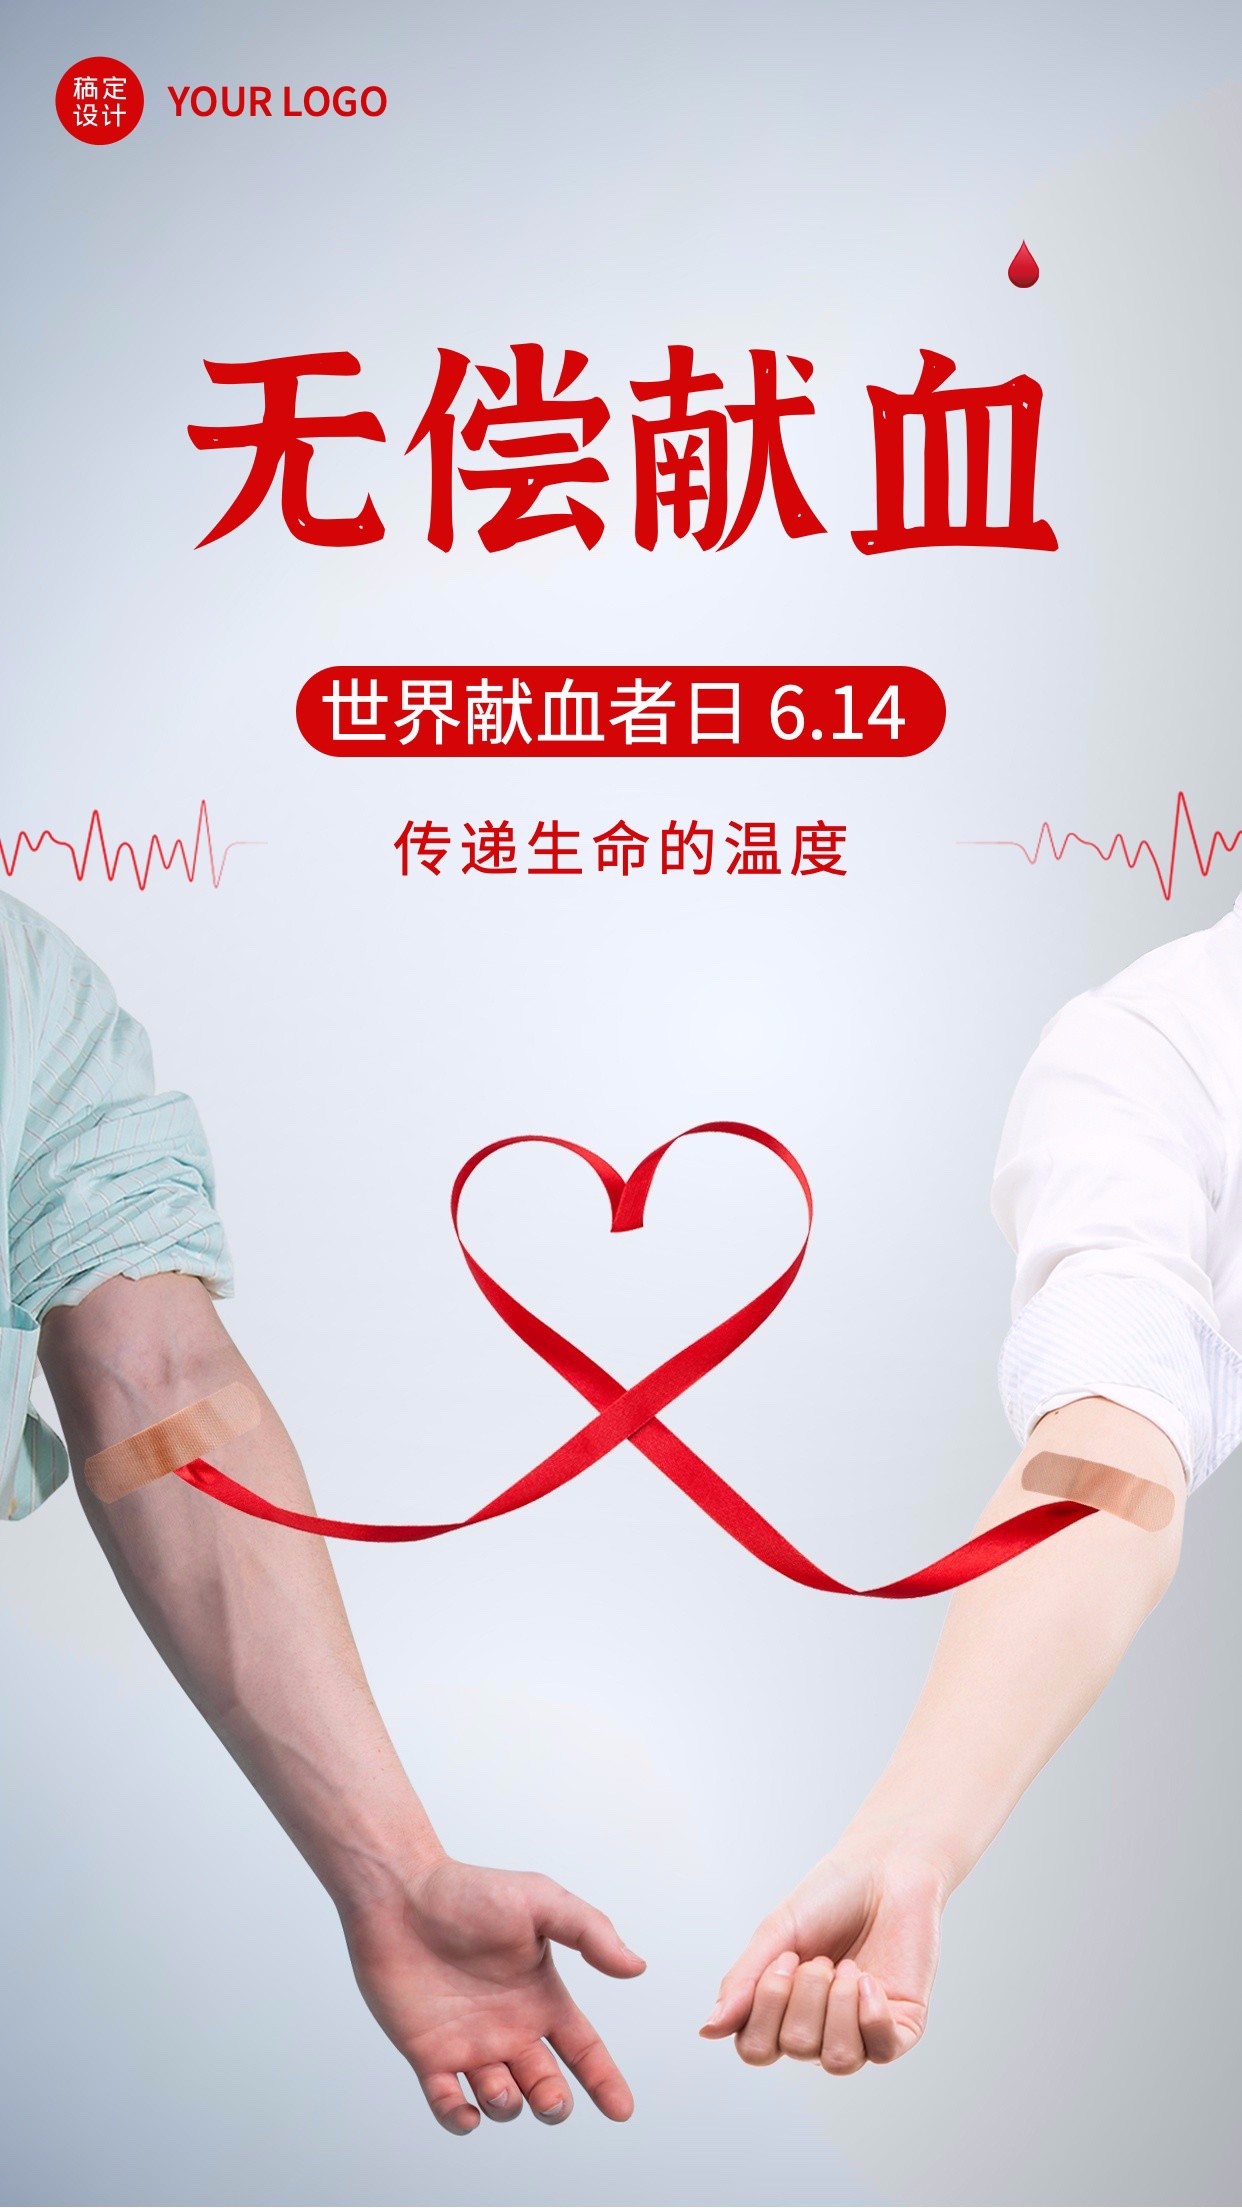 世界献血日节日宣传手机海报预览效果